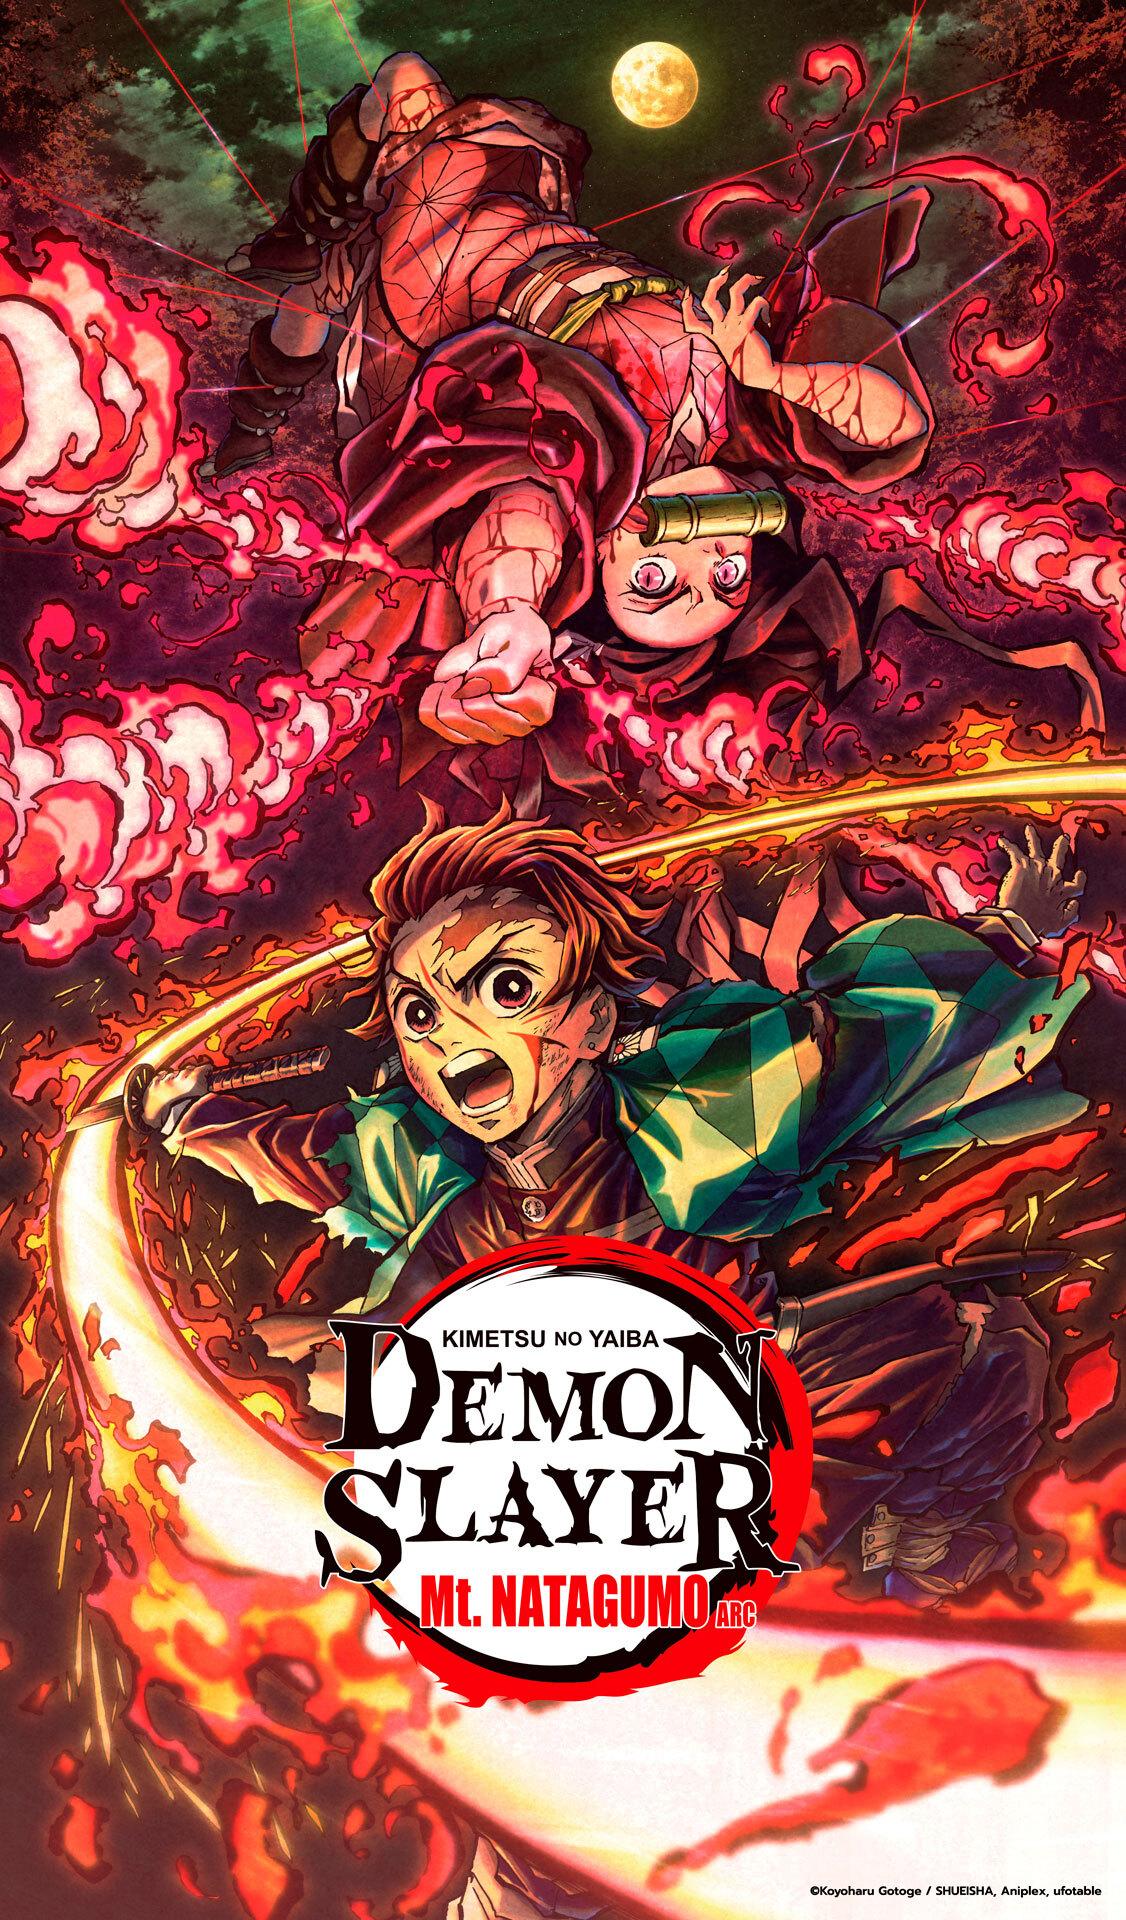 Willgeek - [FUNIMATION] - DEMON SLAYER DUBLADO! A Funimation anunciou na  última segunda (22) que a 1ª temporada de 'Demon Slayer: Kimetsu no Yaiba'  estreia no dia 25 de março ao serviço